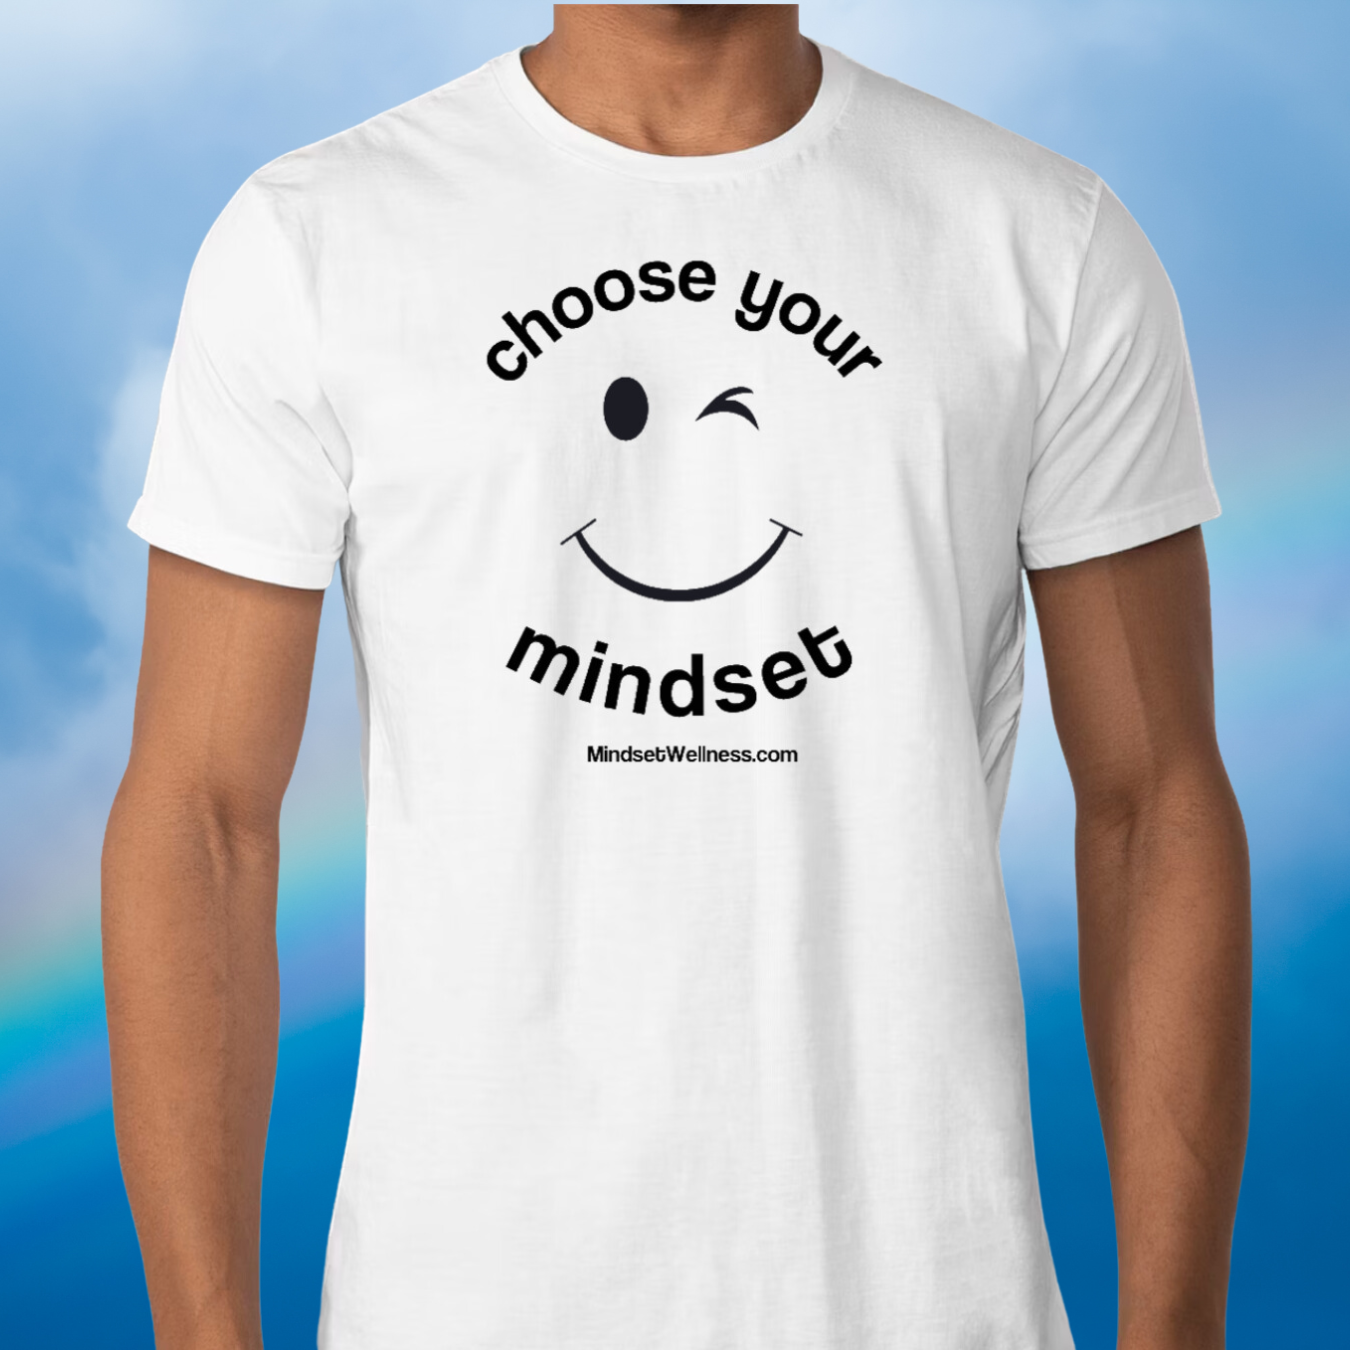 Mindset 'Choose Your Mindset' Tee